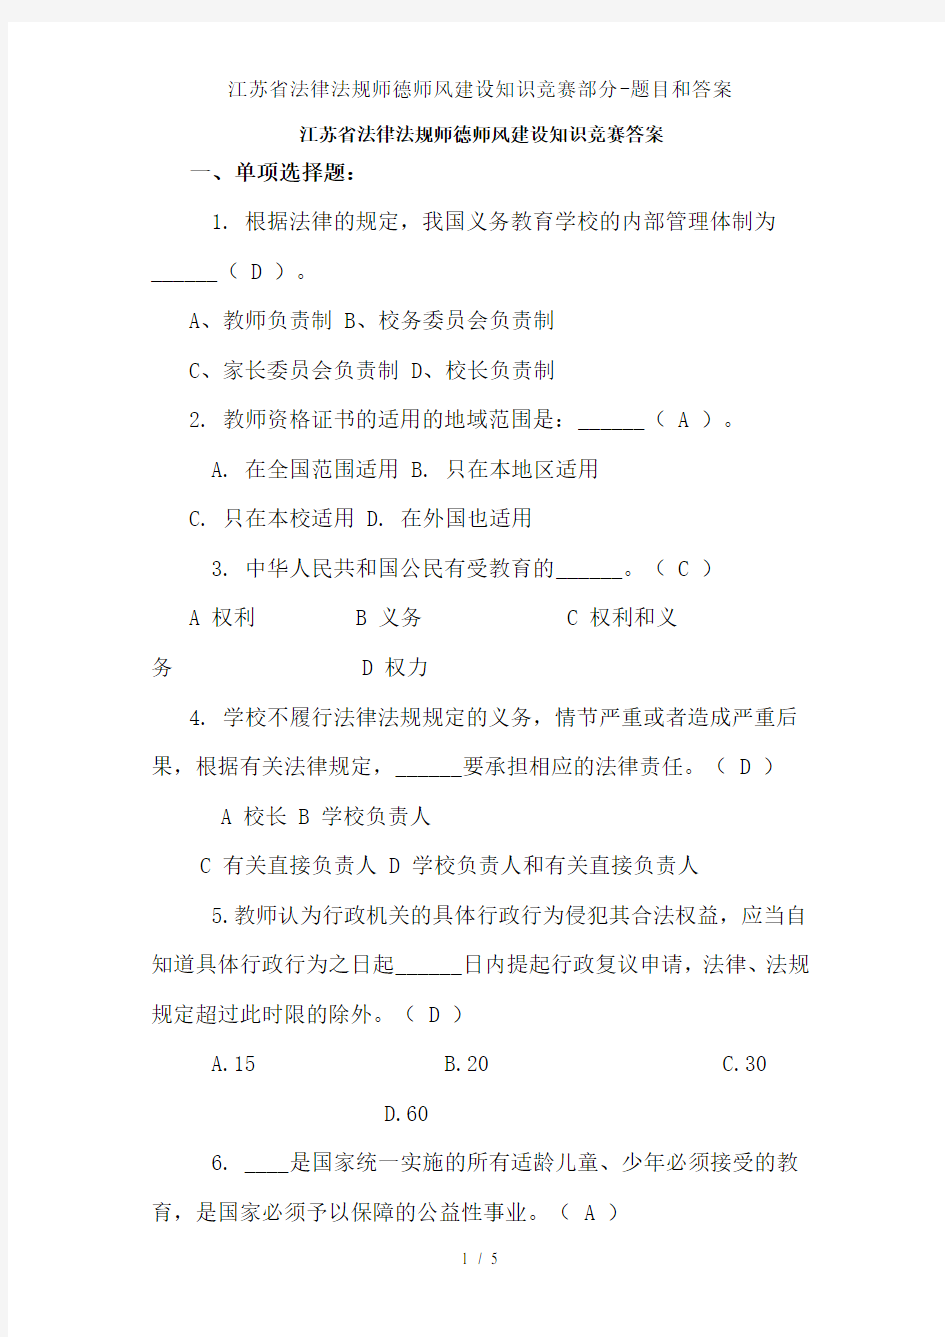 江苏省法律法规师德师风建设知识竞赛部分-题目和答案